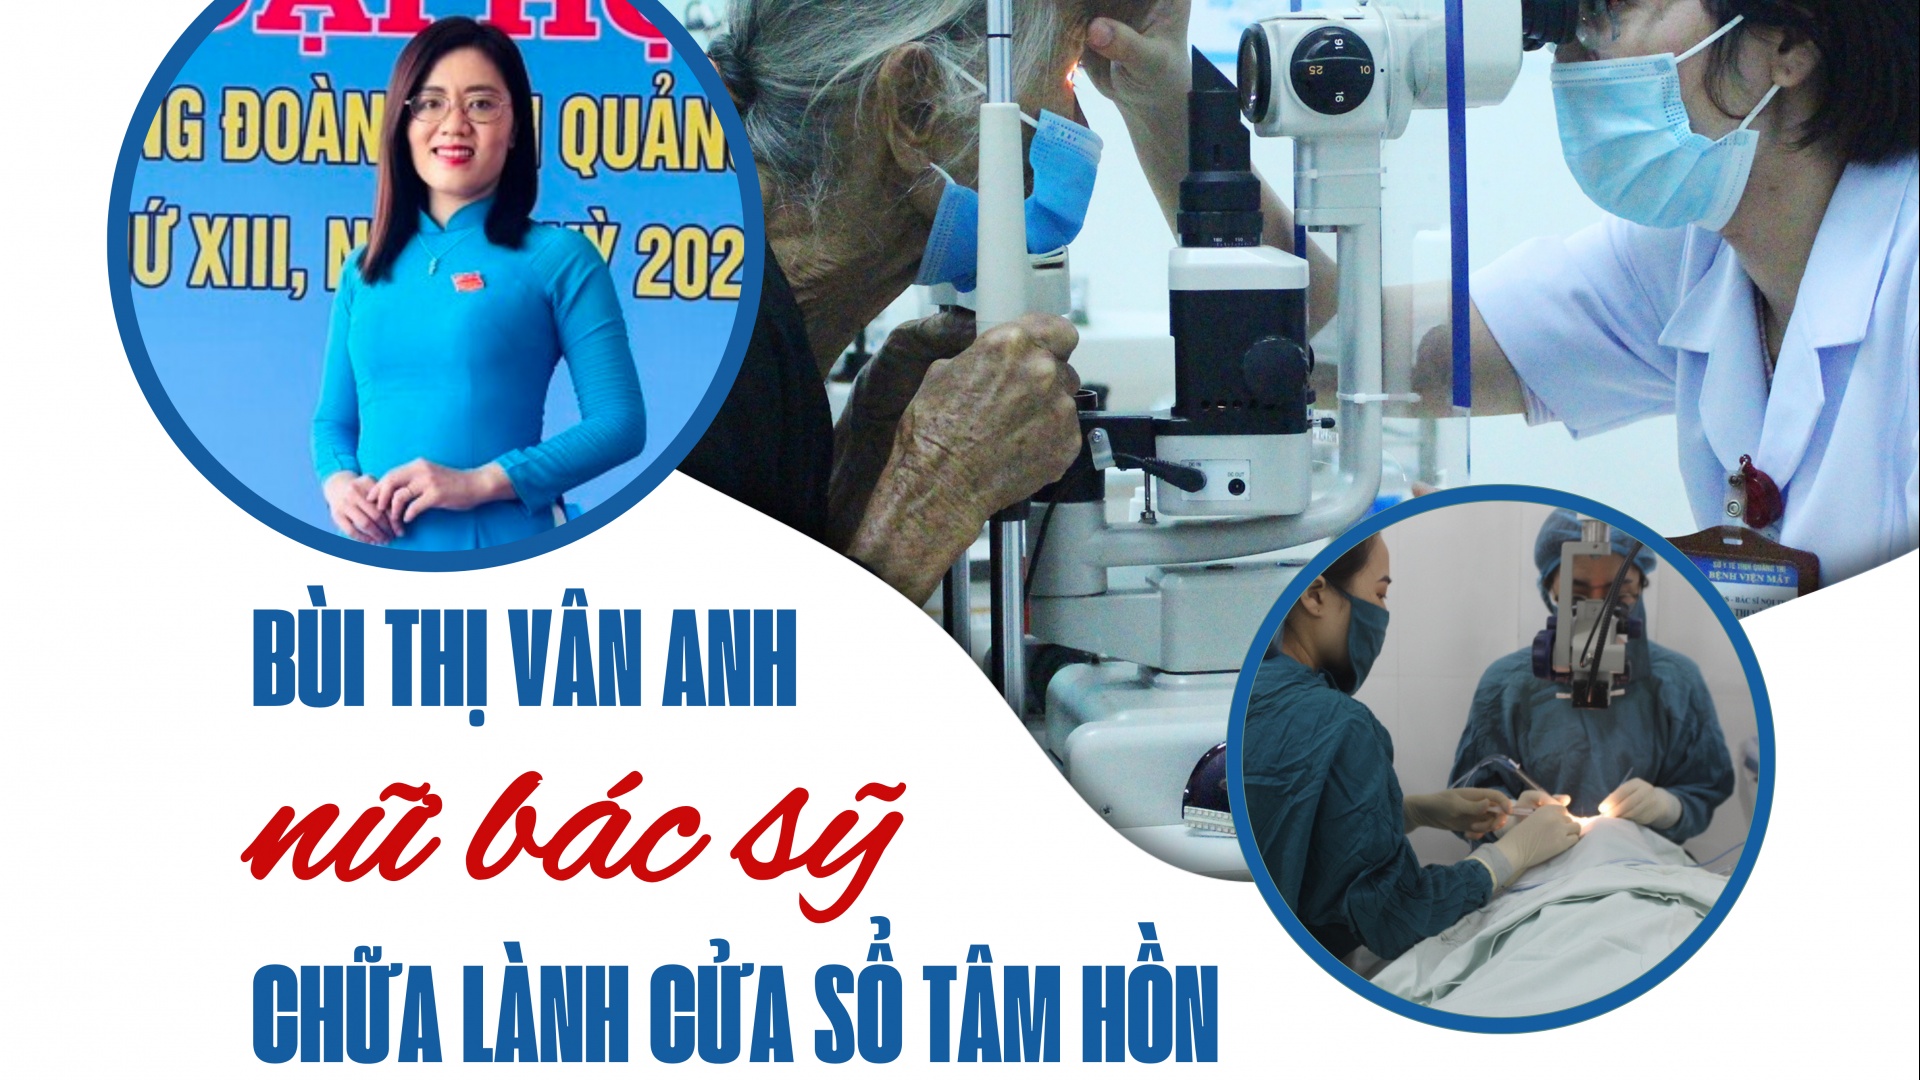 Bùi Thị Vân Anh - nữ bác sỹ chữa lành "cửa sổ tâm hồn"